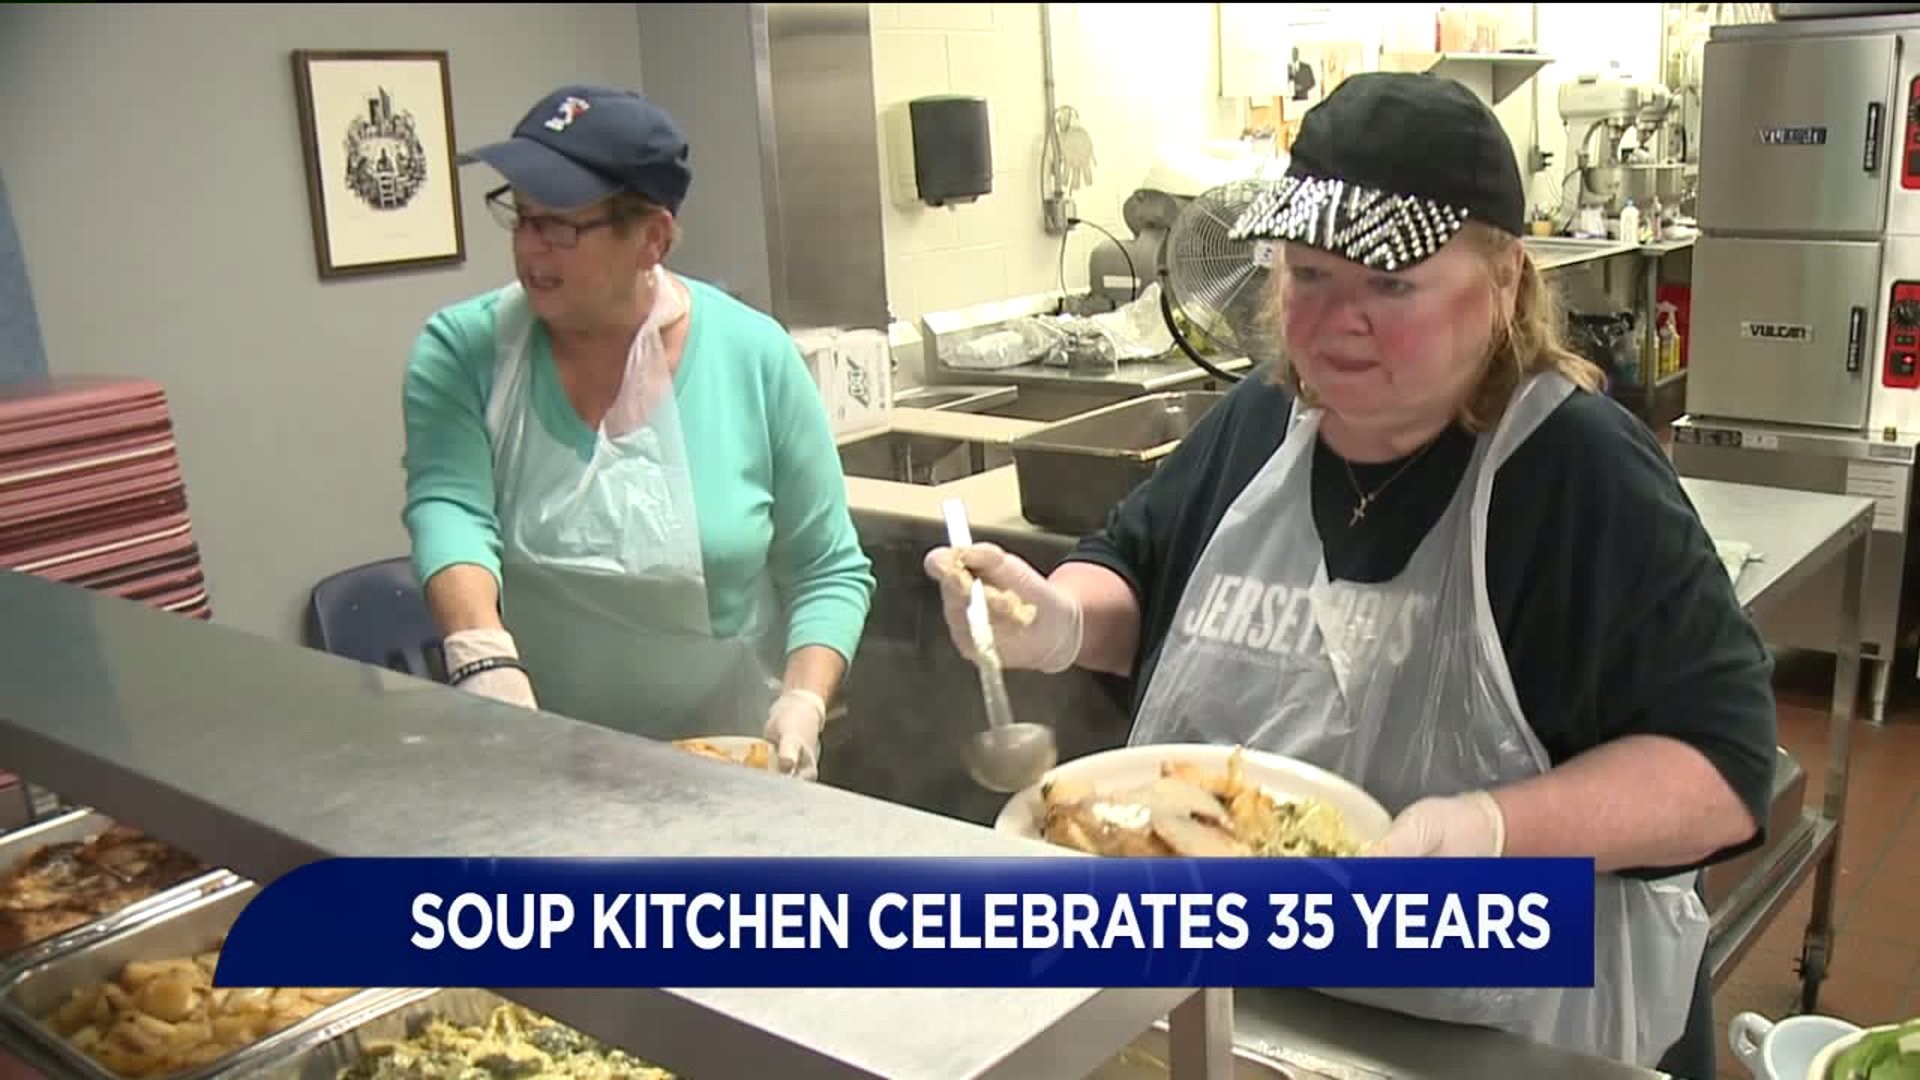 St. Vincent de Paul Kitchen Celebrates 35 Years